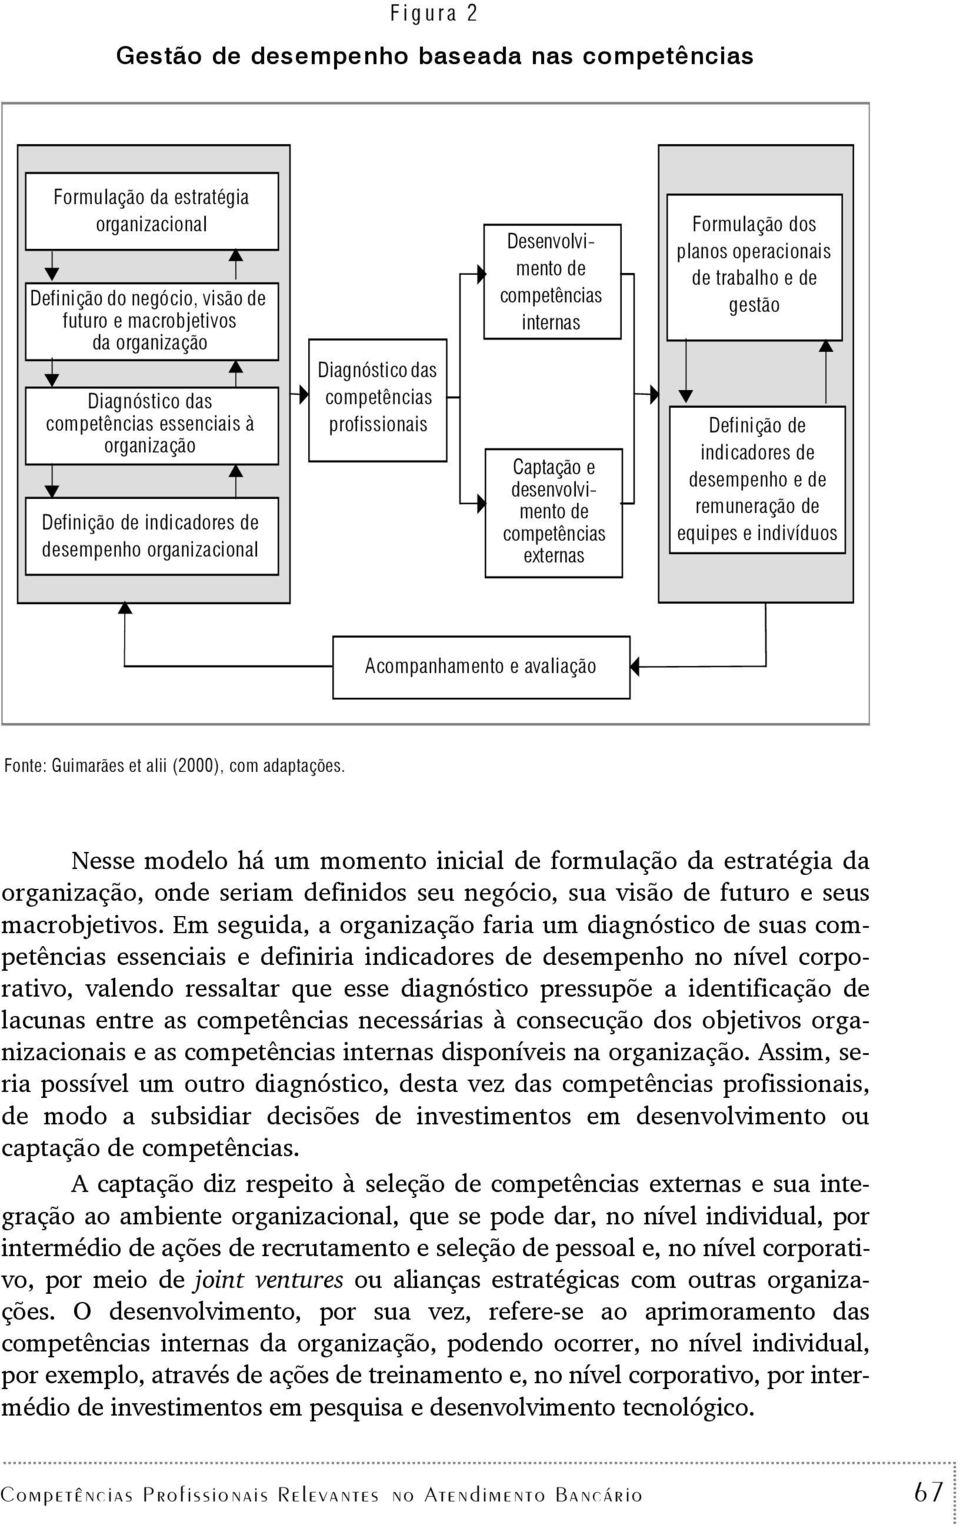 Formulação dos planos operacionais de rabalho e de gesão Definição de indicadores de desempenho e de remuneração de equipes e indivíduos Acompanhameno e avaliação Fone: Guimarães e alii (2000), com